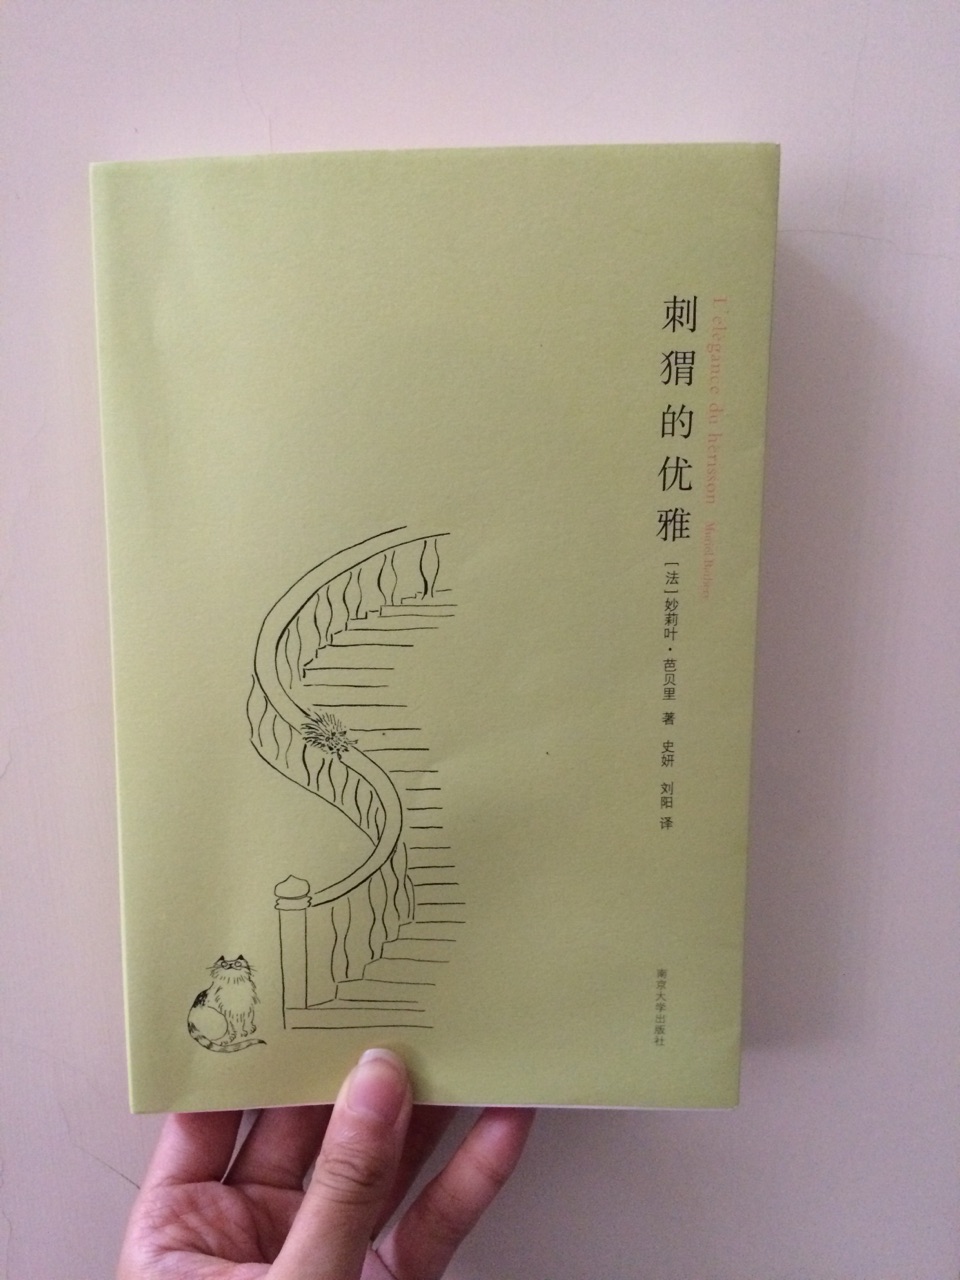 这真的是一本很法国的小说：各种哲学见解和自我满足，对日本文化的追崇……